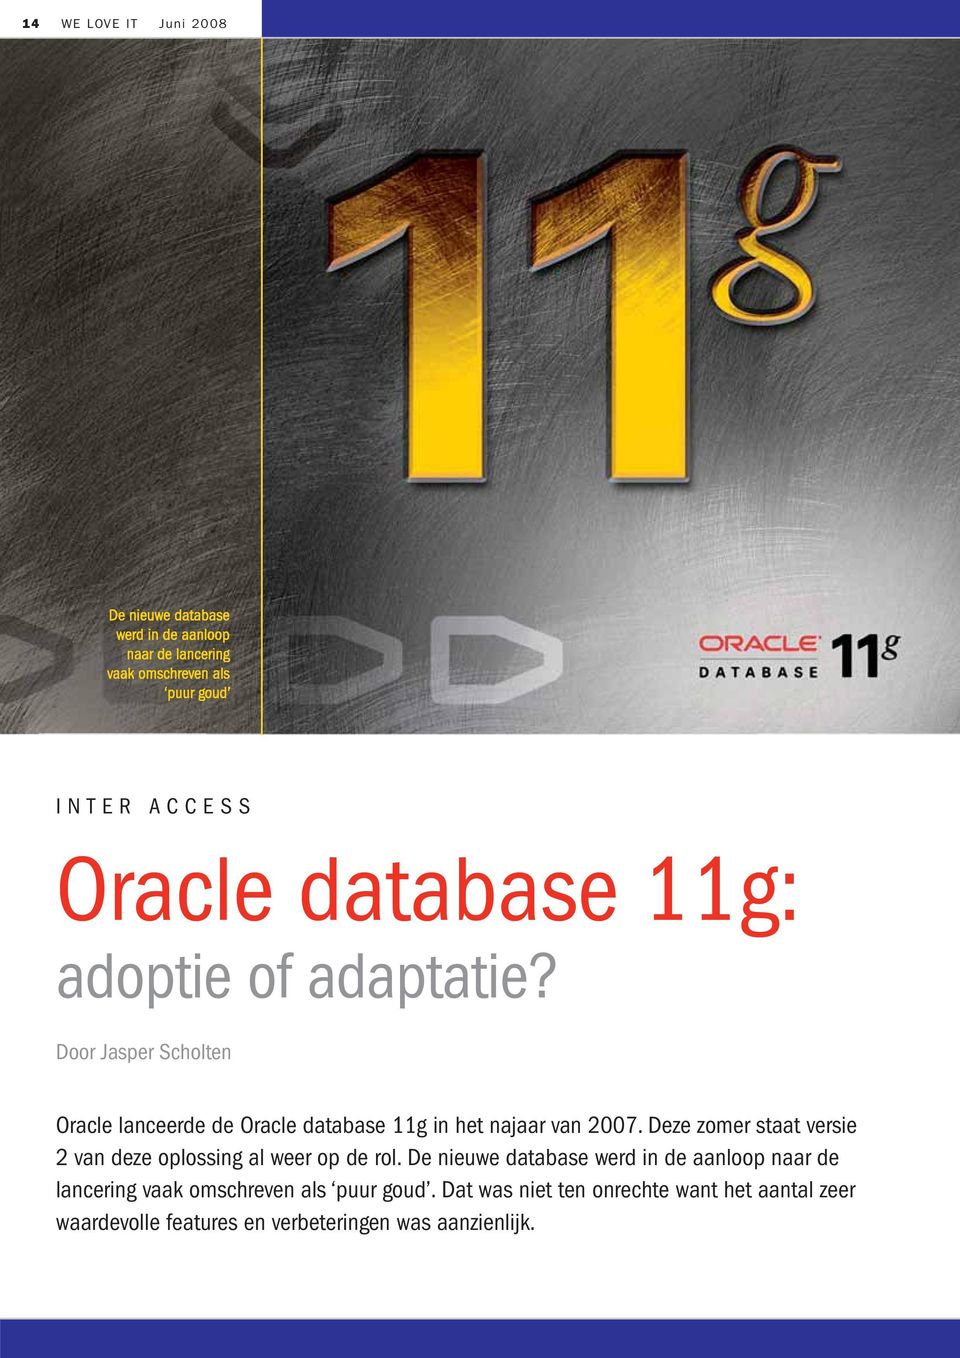 Door Jasper Scholten Oracle lanceerde de Oracle database 11g in het najaar van 2007.